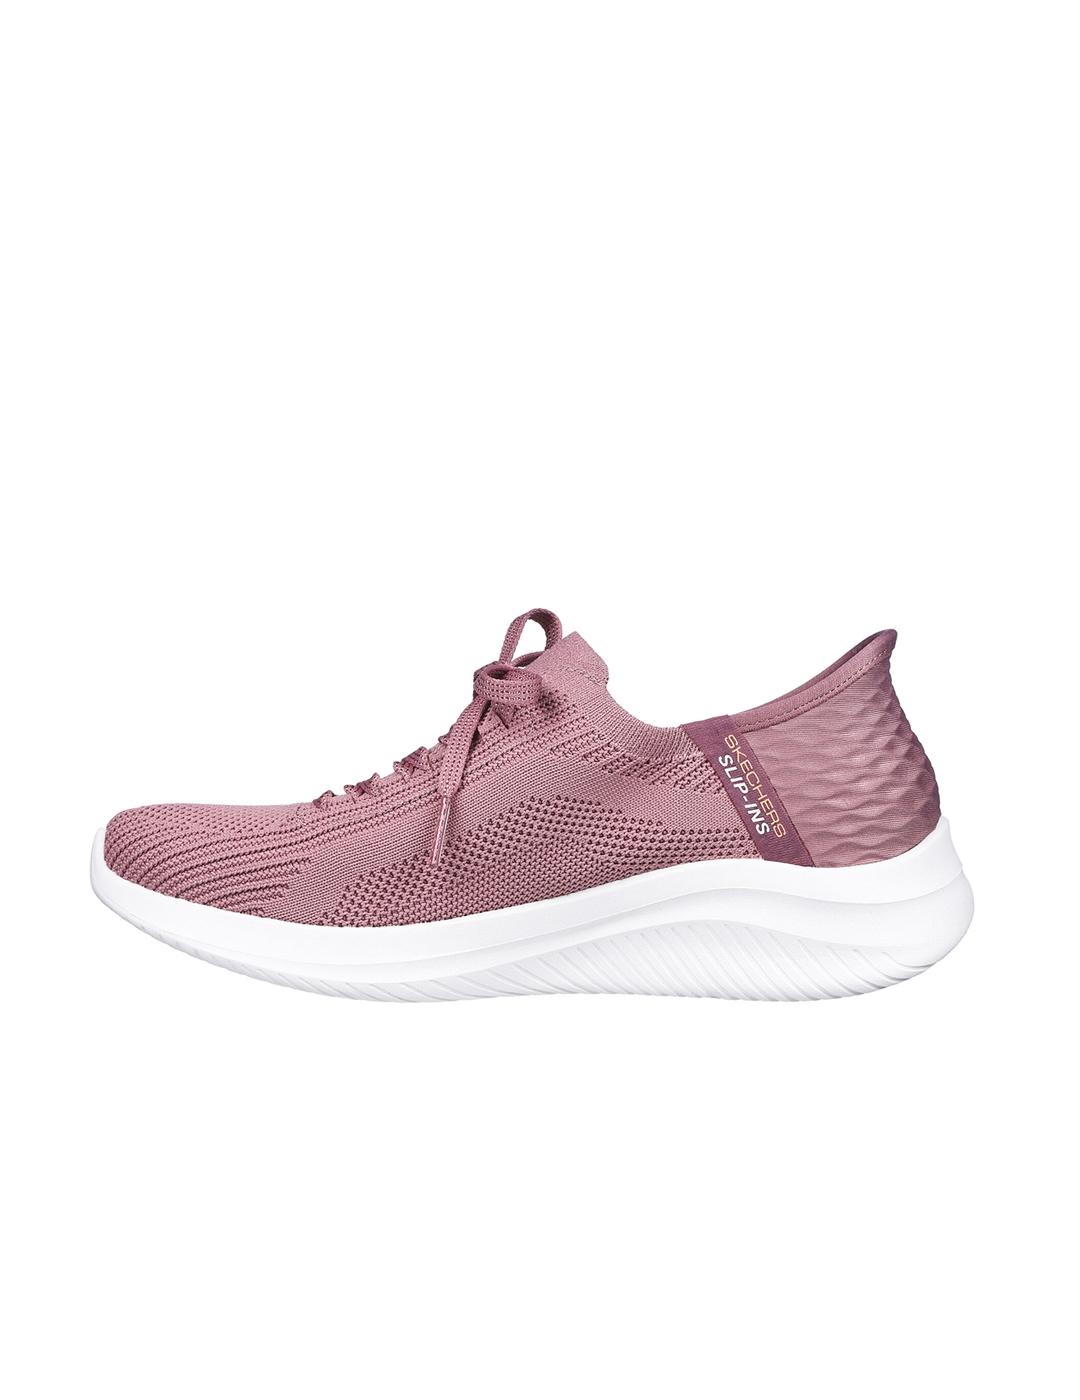 Zapatillas Skechers Ultra FLex 3.0 Brilliant rosa de mujer